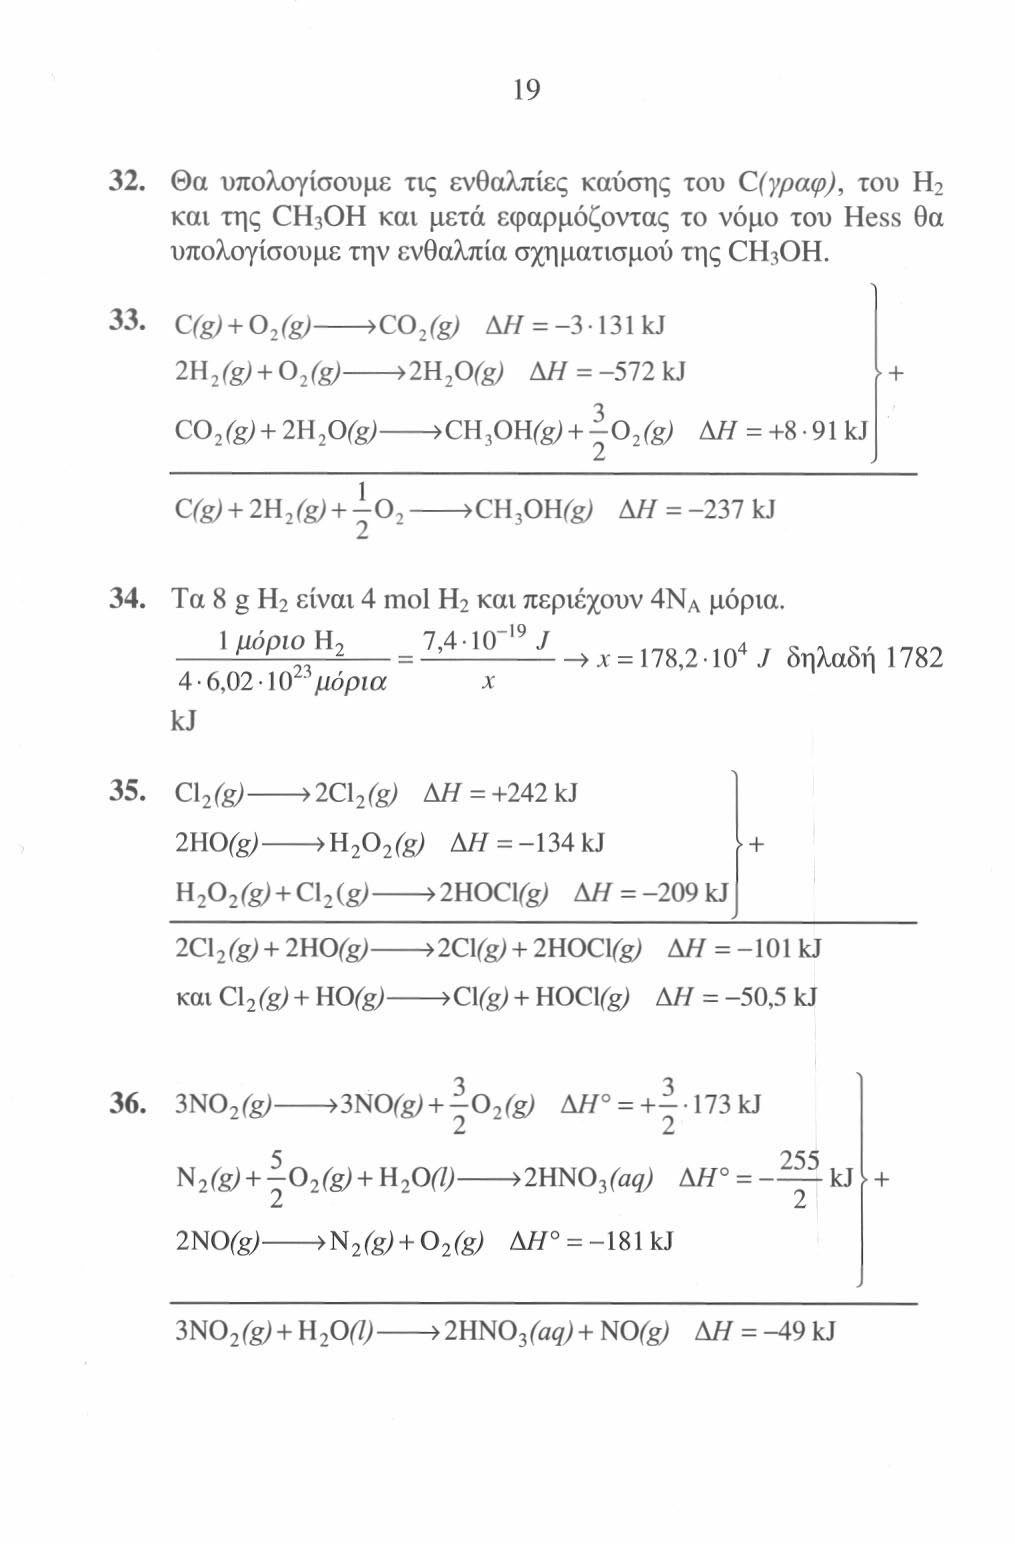 40. CJI, 3ν - 21 -Ο, ->VCOt + (ν + 1)Η,0 ΑΗ ] = -2936 kj vc + v0 2 >vco, ΑΗ\ = 376ν kj (ν + ΐ)Η 2 + 0 2 Κ ν +1 )Η 2 0 ΑΗ\ = -(ν + 1 )276 kj } + 3ν + 1 vc0 2 + (ν + 1)Η : 0 >C v H 2v+2 +- Ο, - ΑΗ, =